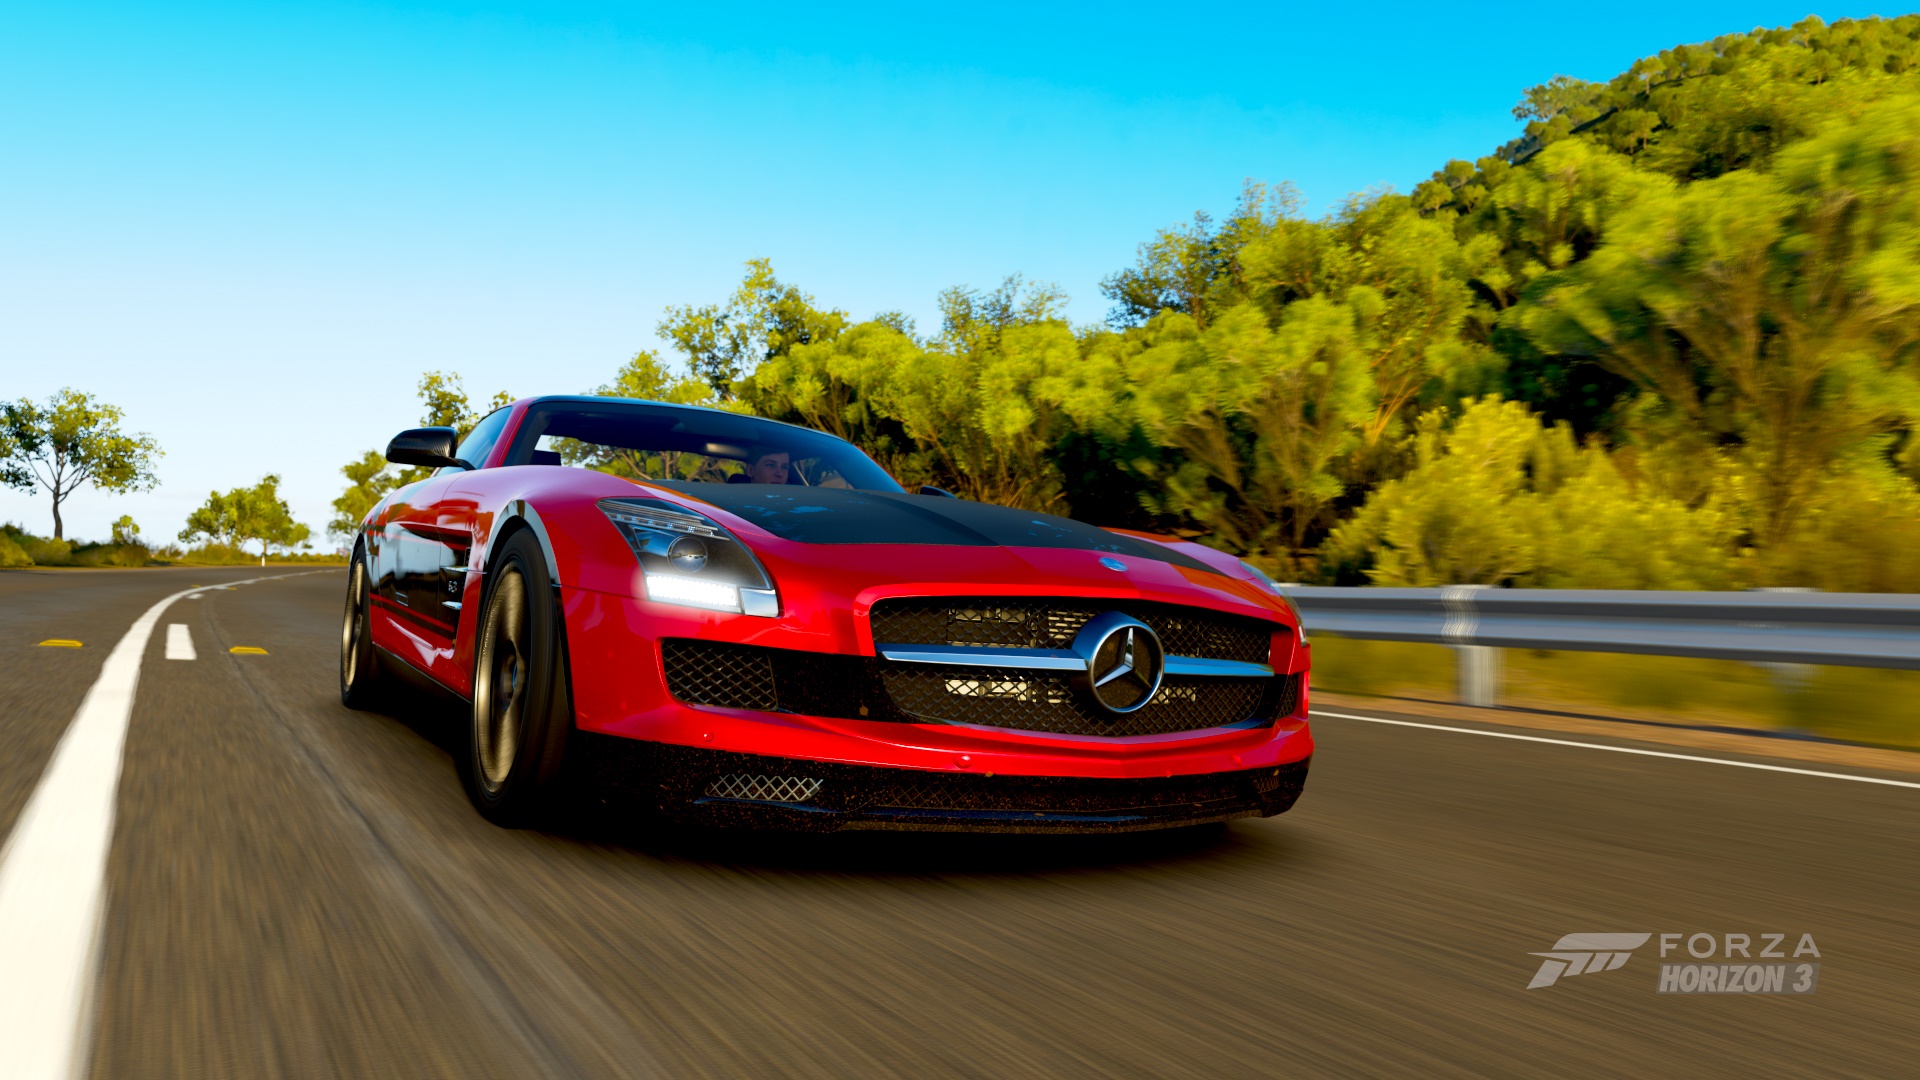 Descarga gratuita de fondo de pantalla para móvil de Mercedes, Coche, Fuerza, Videojuego, Forza Horizon 3.